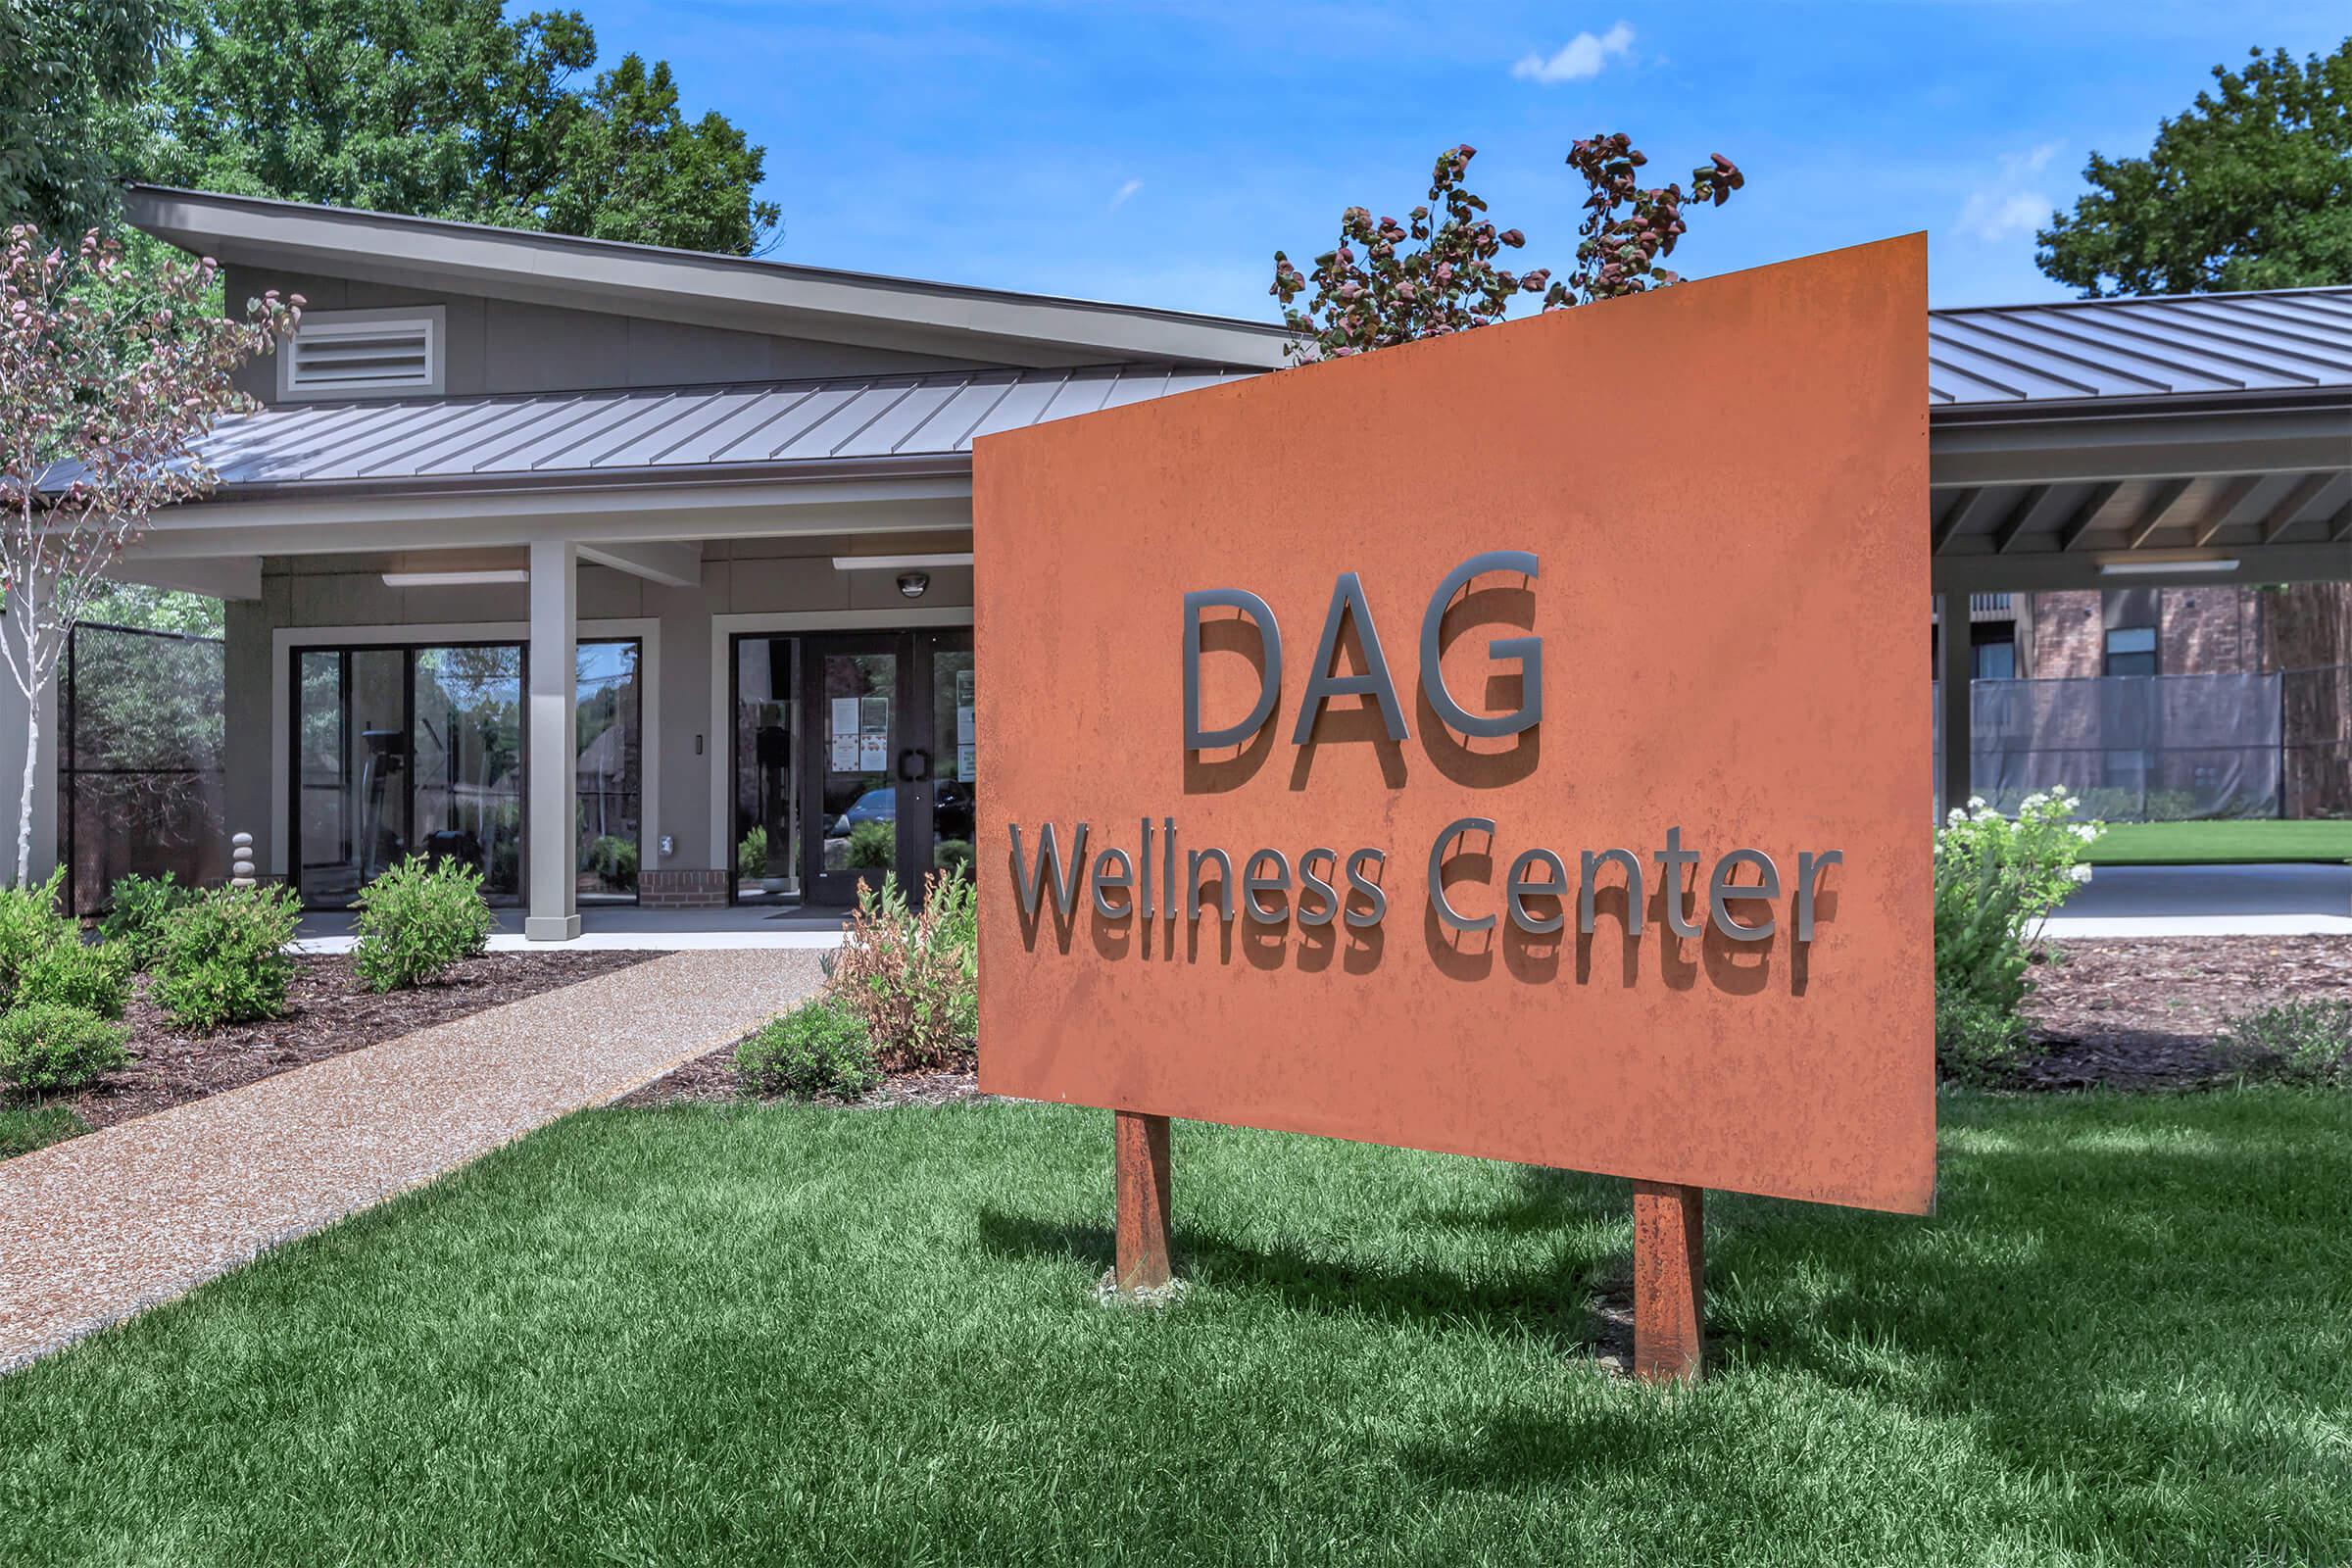 Wellness center